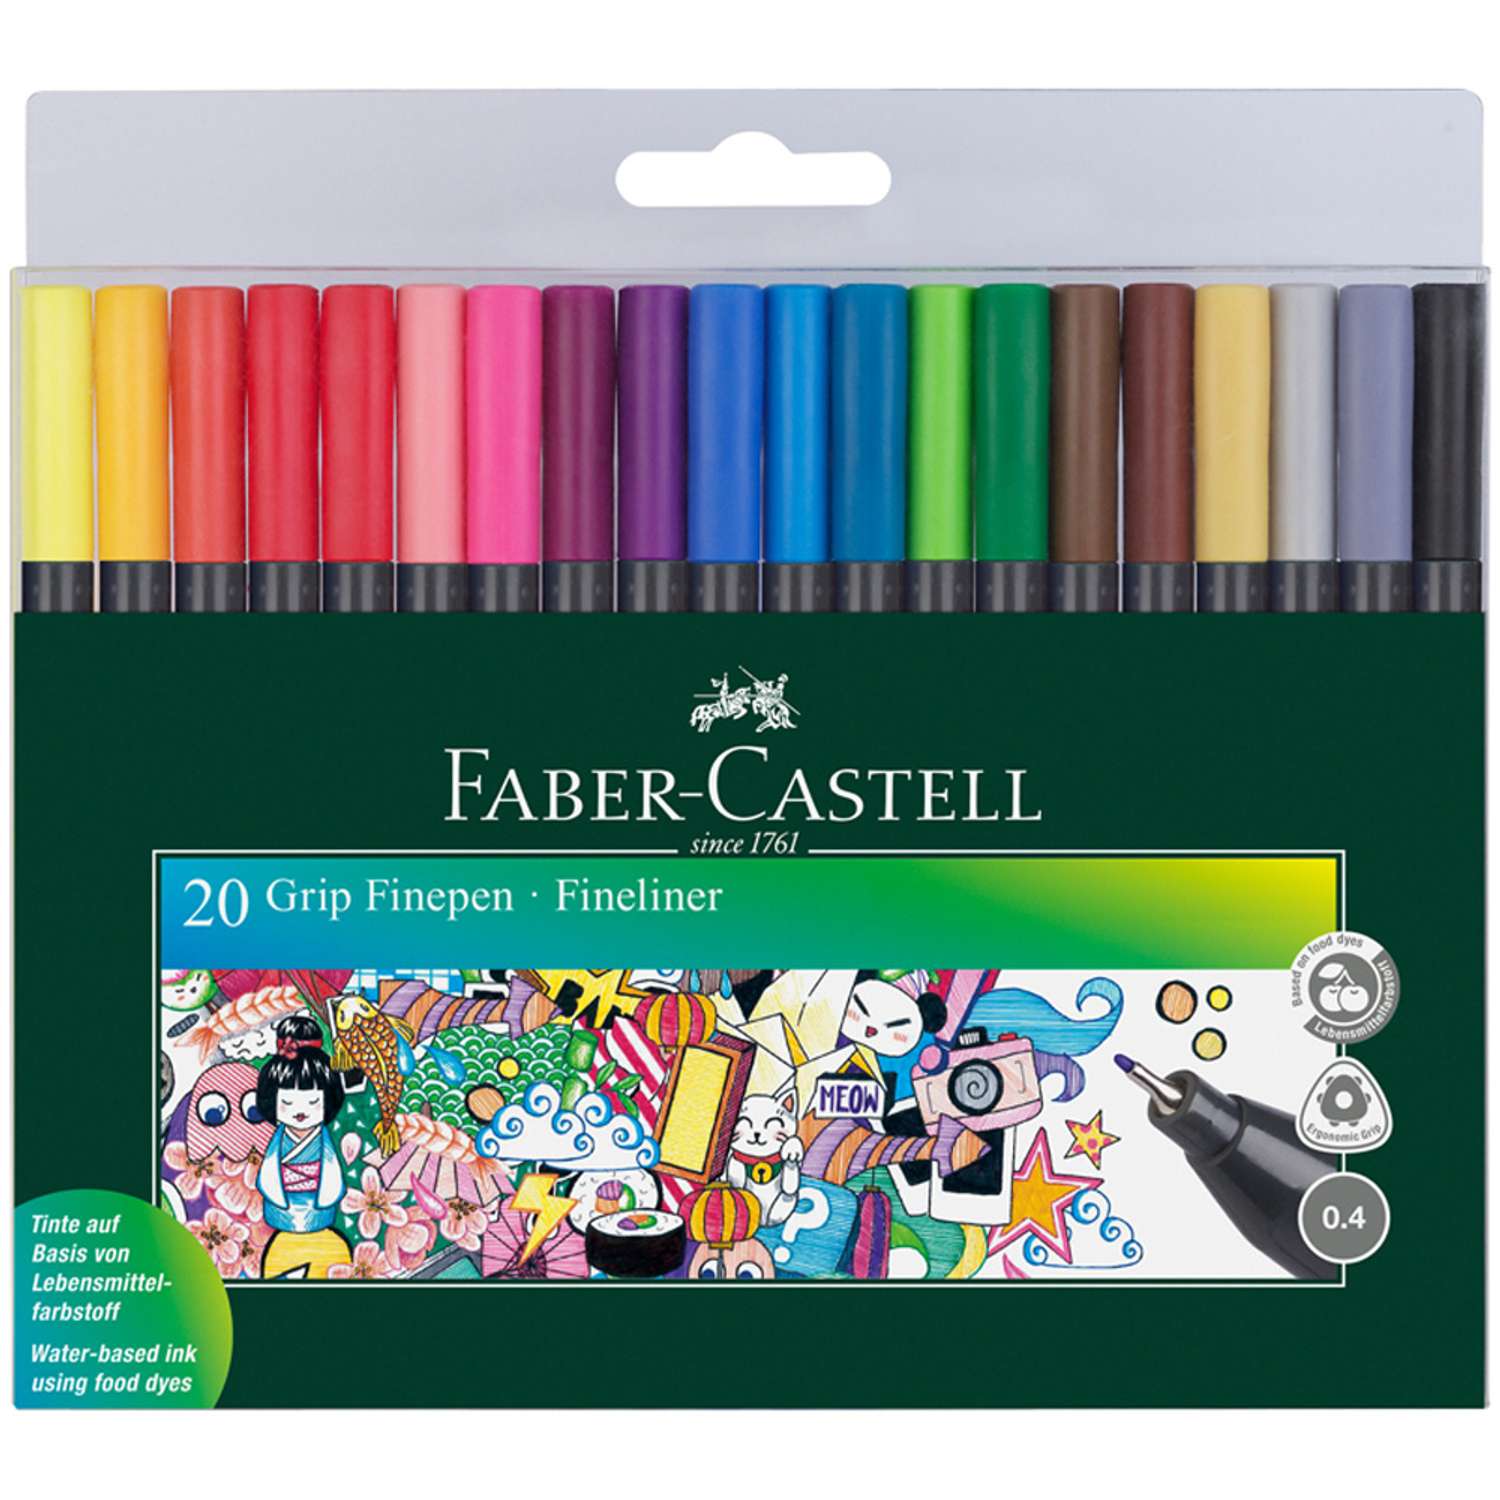 Набор капиллярных ручек FABER CASTELL Grip Finepen 20 цветов трехгранные - фото 2